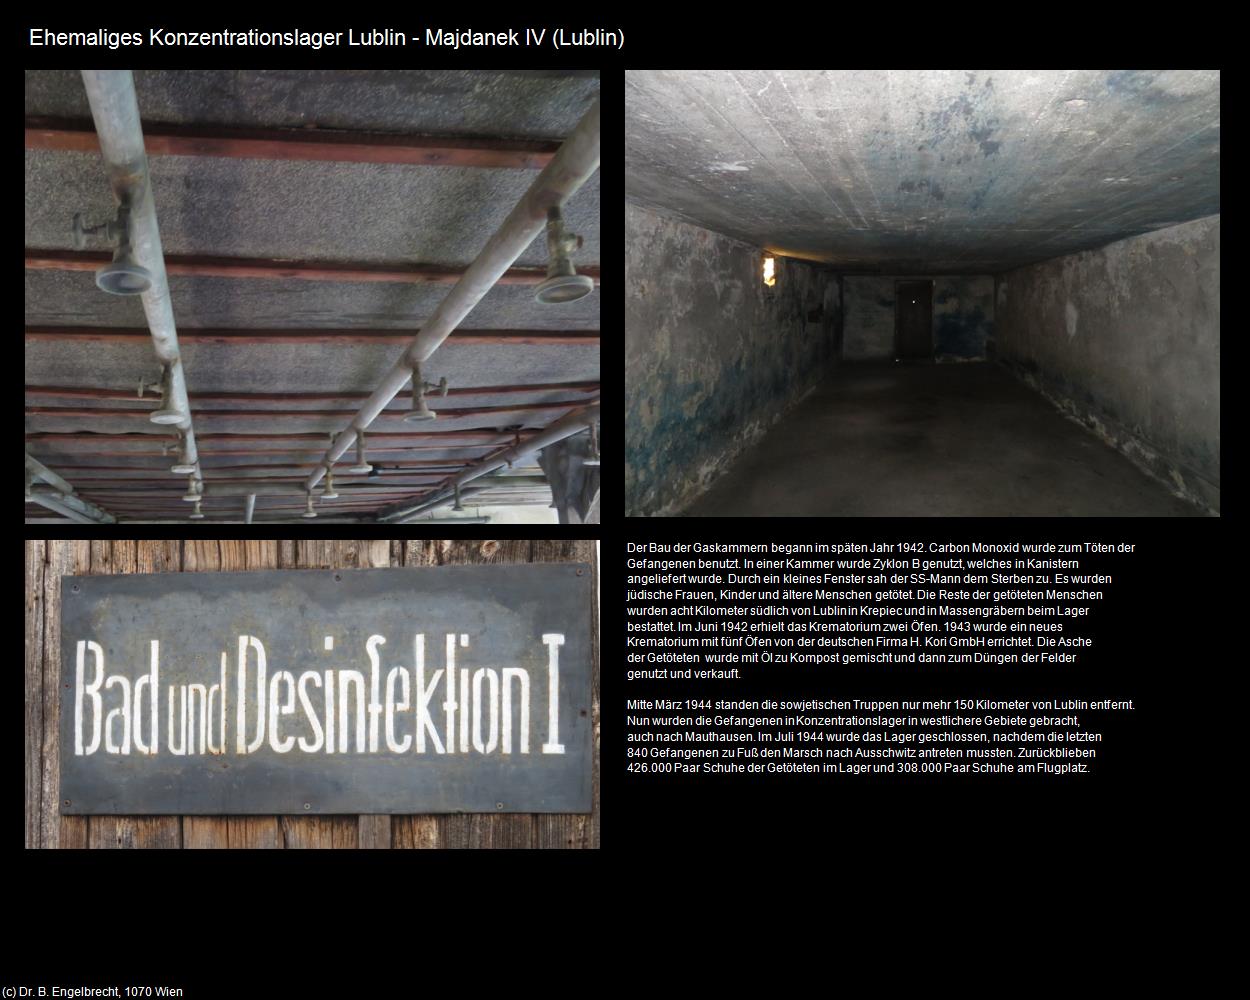 Ehem. Konzentrationslager Lublin - Majdanek IV (Lublin) in POLEN-Galizien